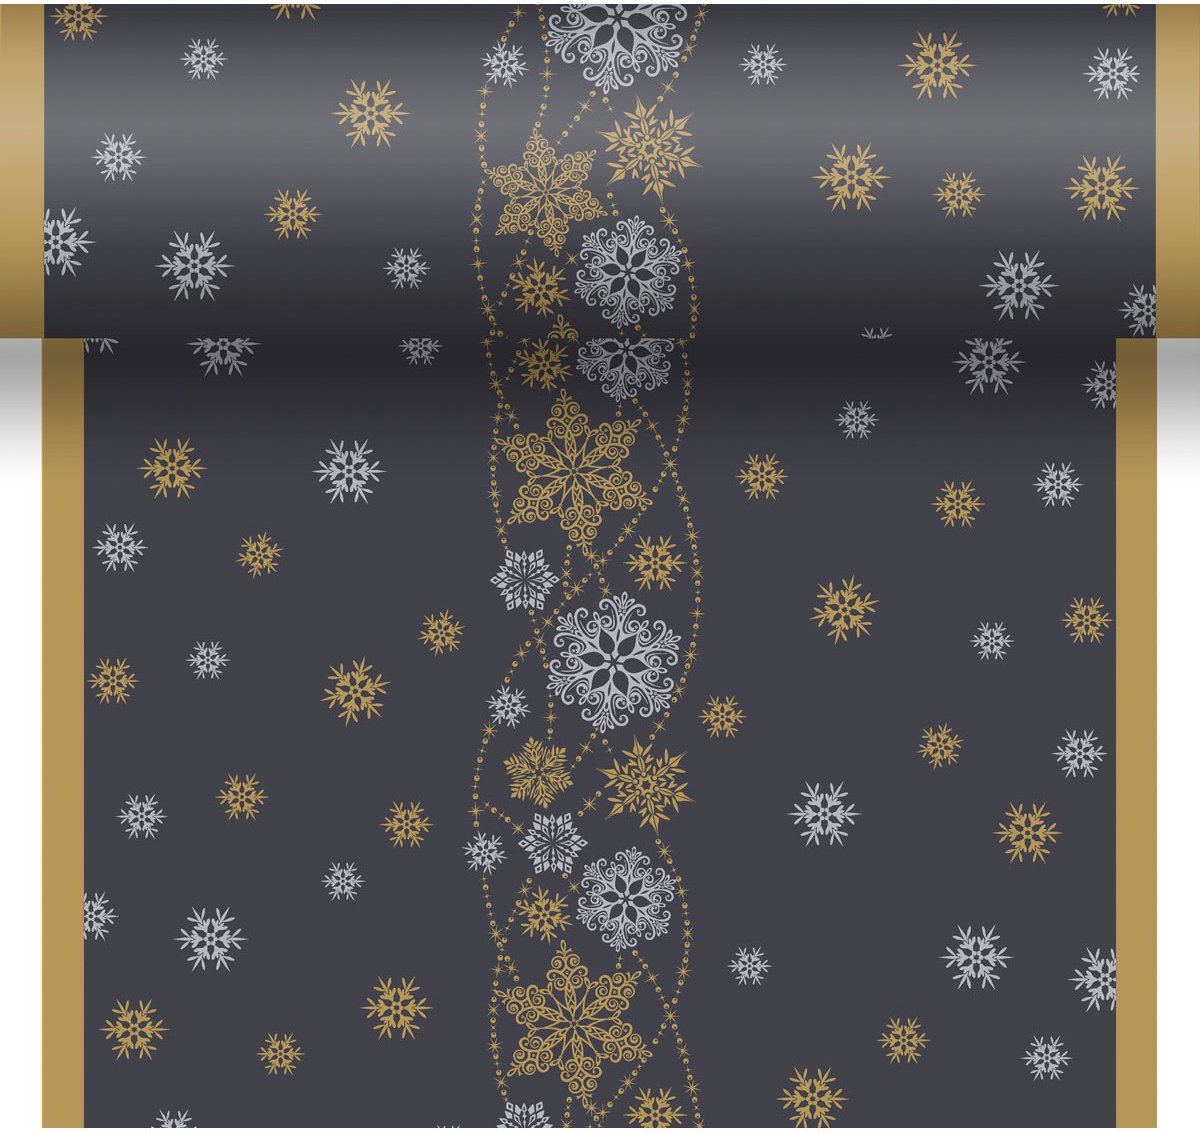 2x stuks kerst thema tafellopers/placemats zwart met glitter sneeuwvlokken 40 x 480 cm - Kerstdiner tafeldecoratie versieringen